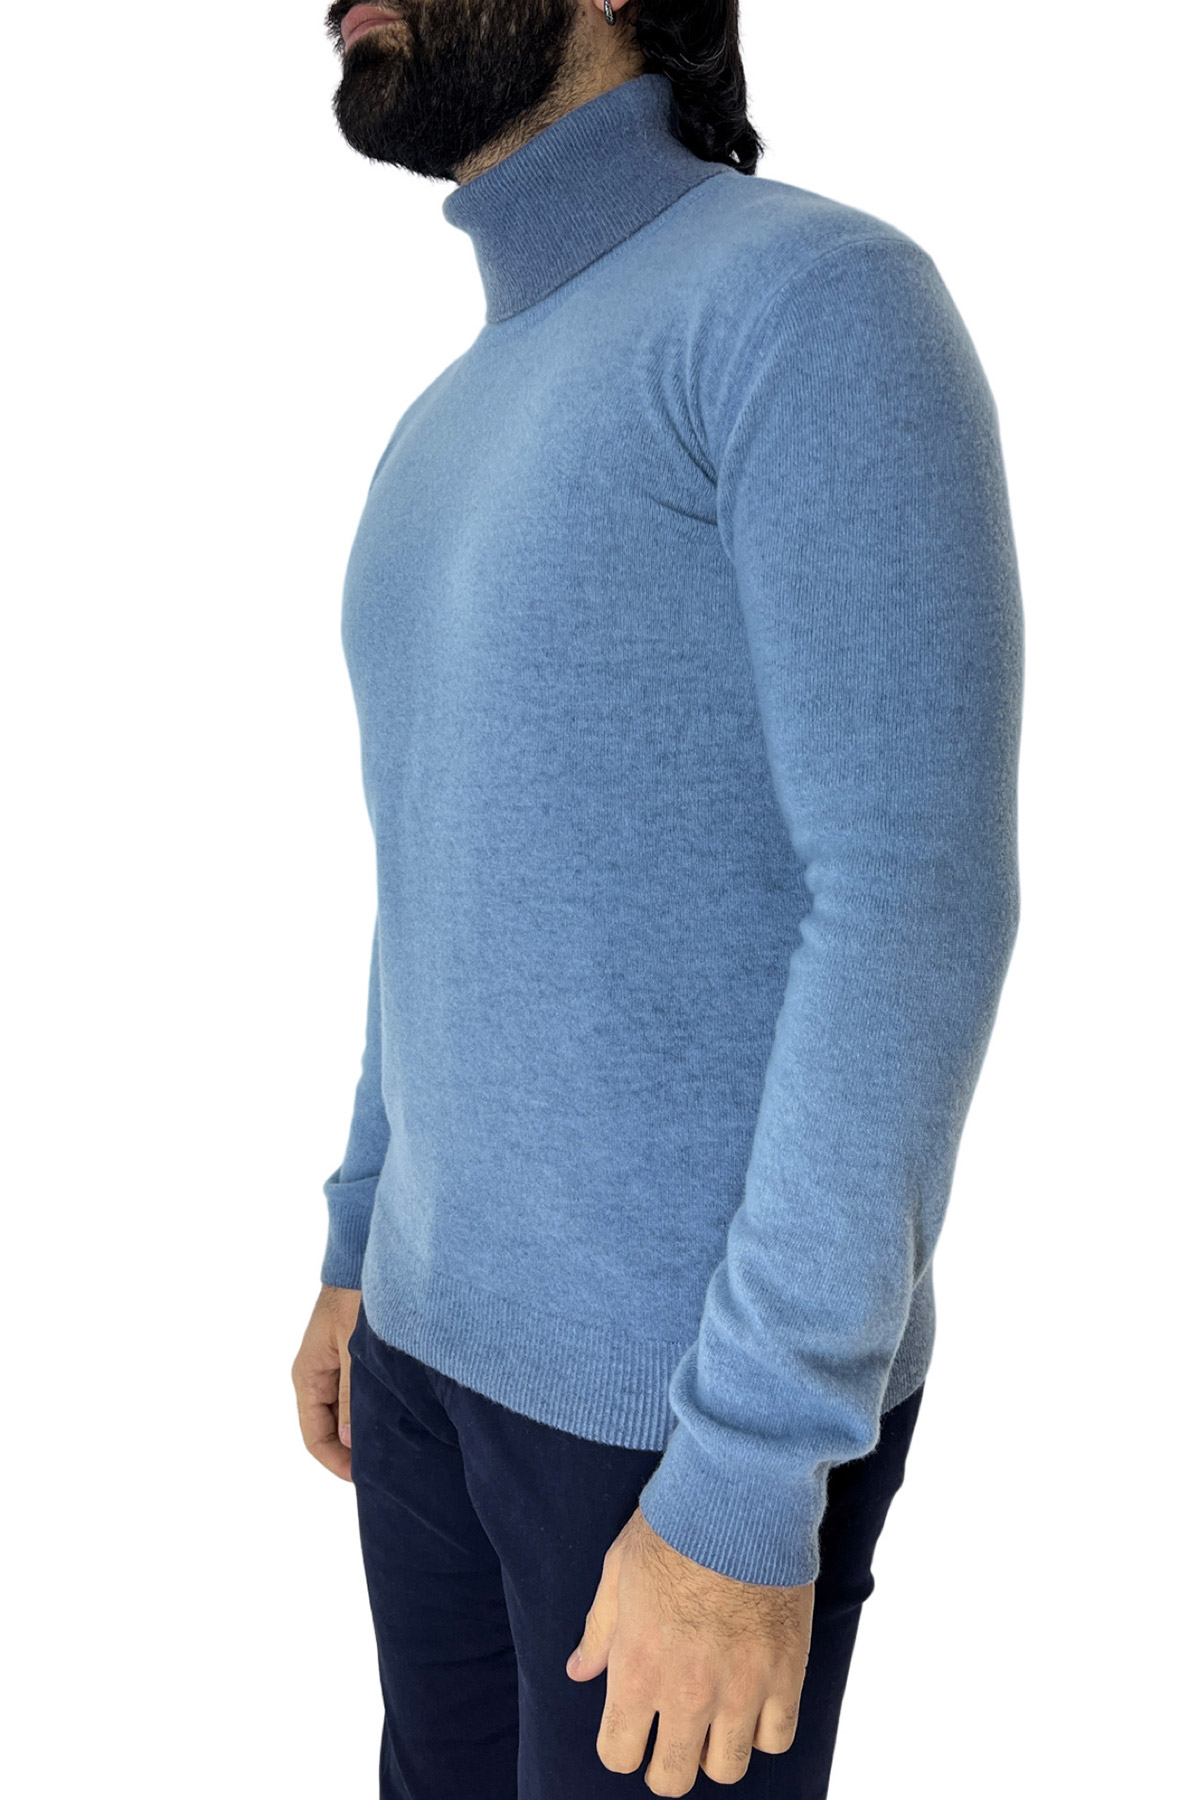 Maglione collo alto da uomo azzurro stone wash in lana made in italy tinta unita